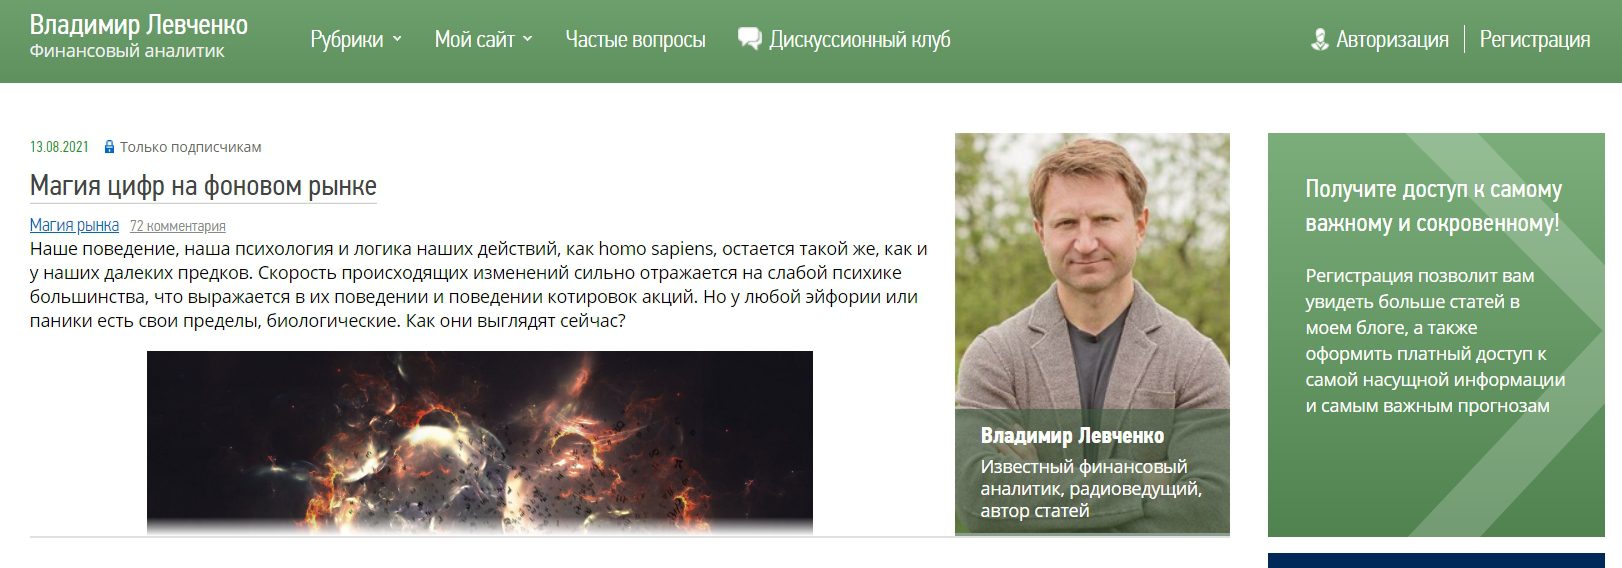 Сайт Владимира Левченко